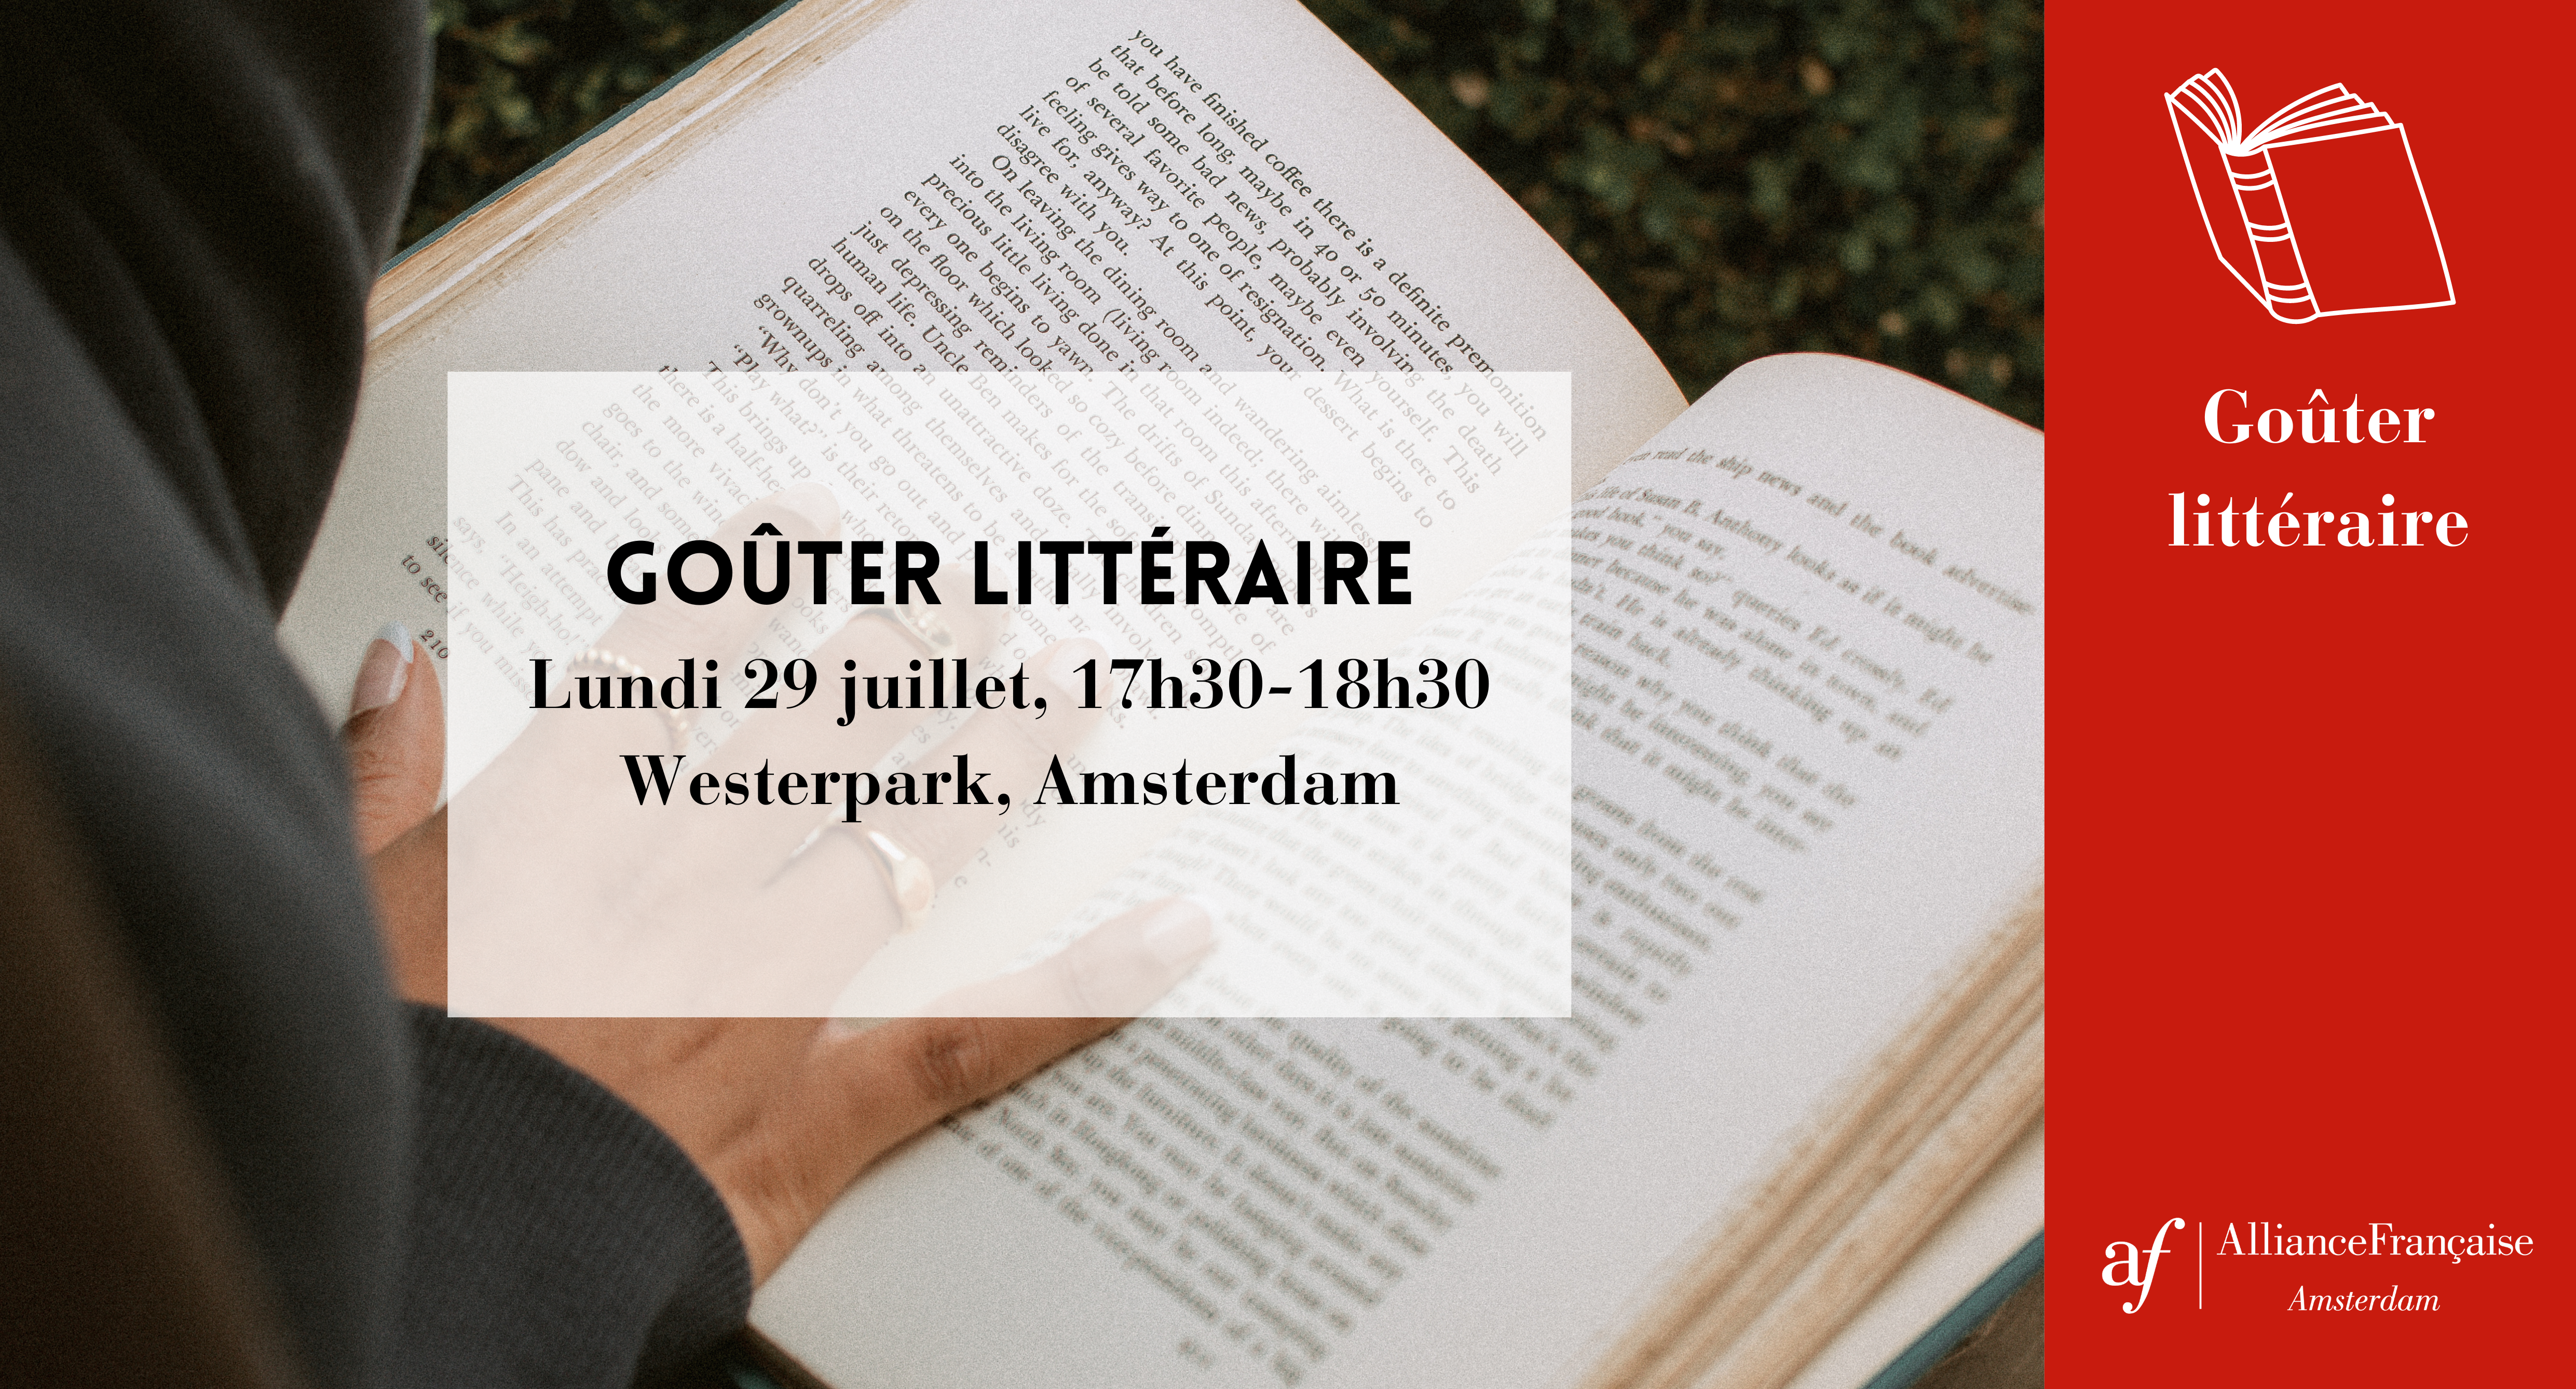 Goûter littéraire - July